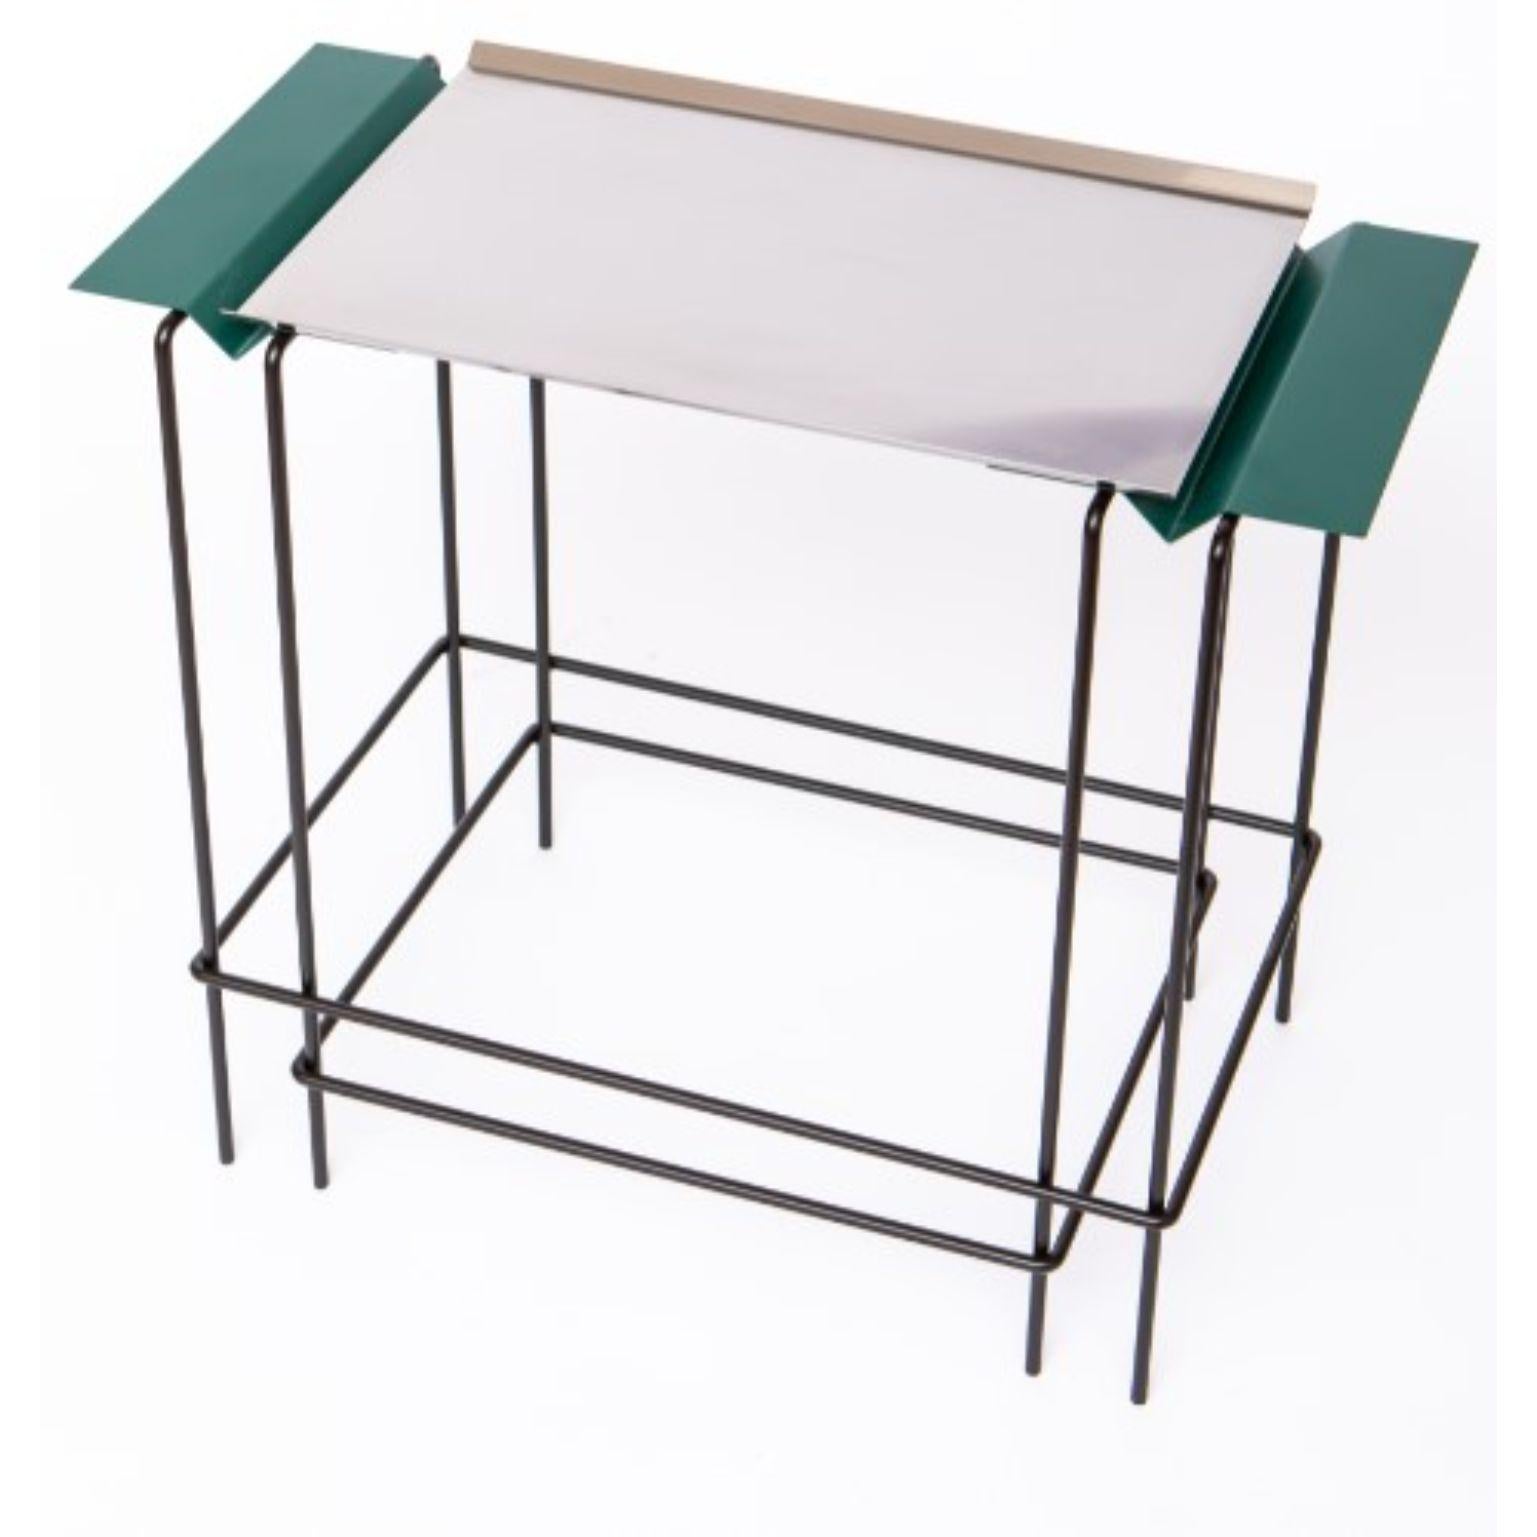 Modern Leva 50 - Table by Alva Design For Sale